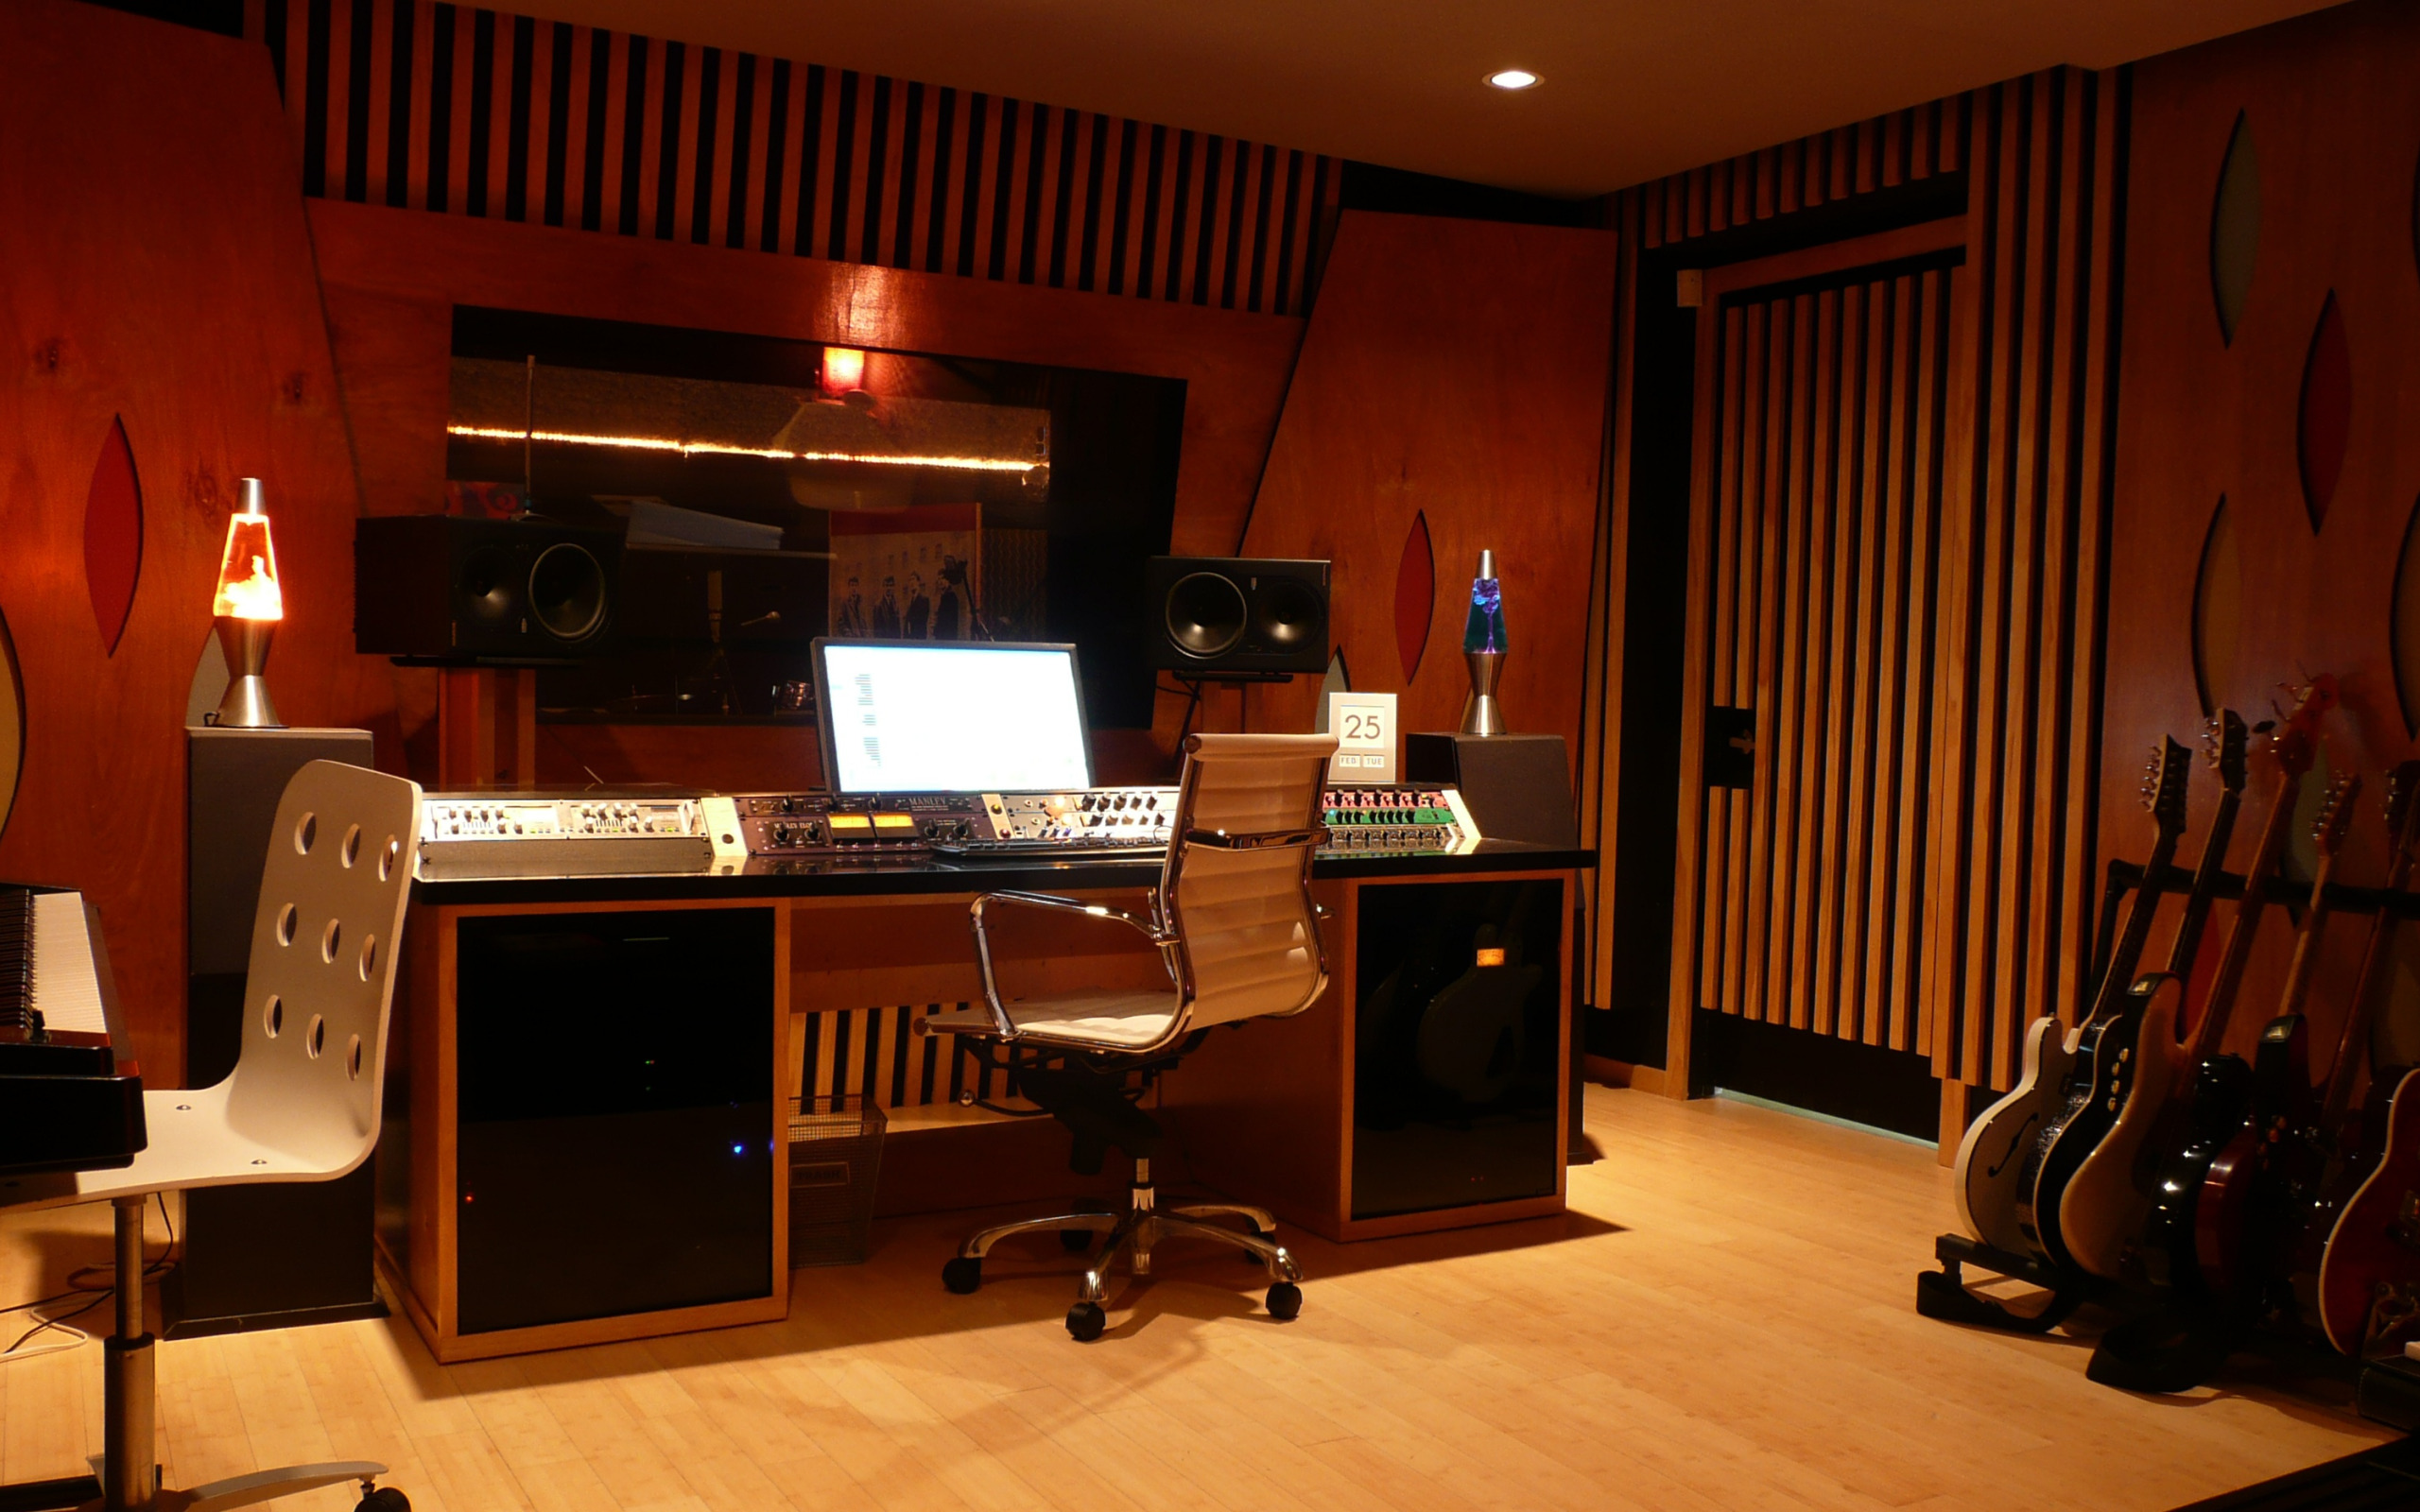 Музыкальная студия. Студия звукозаписи интерьер. Комната студия звукозаписи. Интерьер музыкальной комнаты.